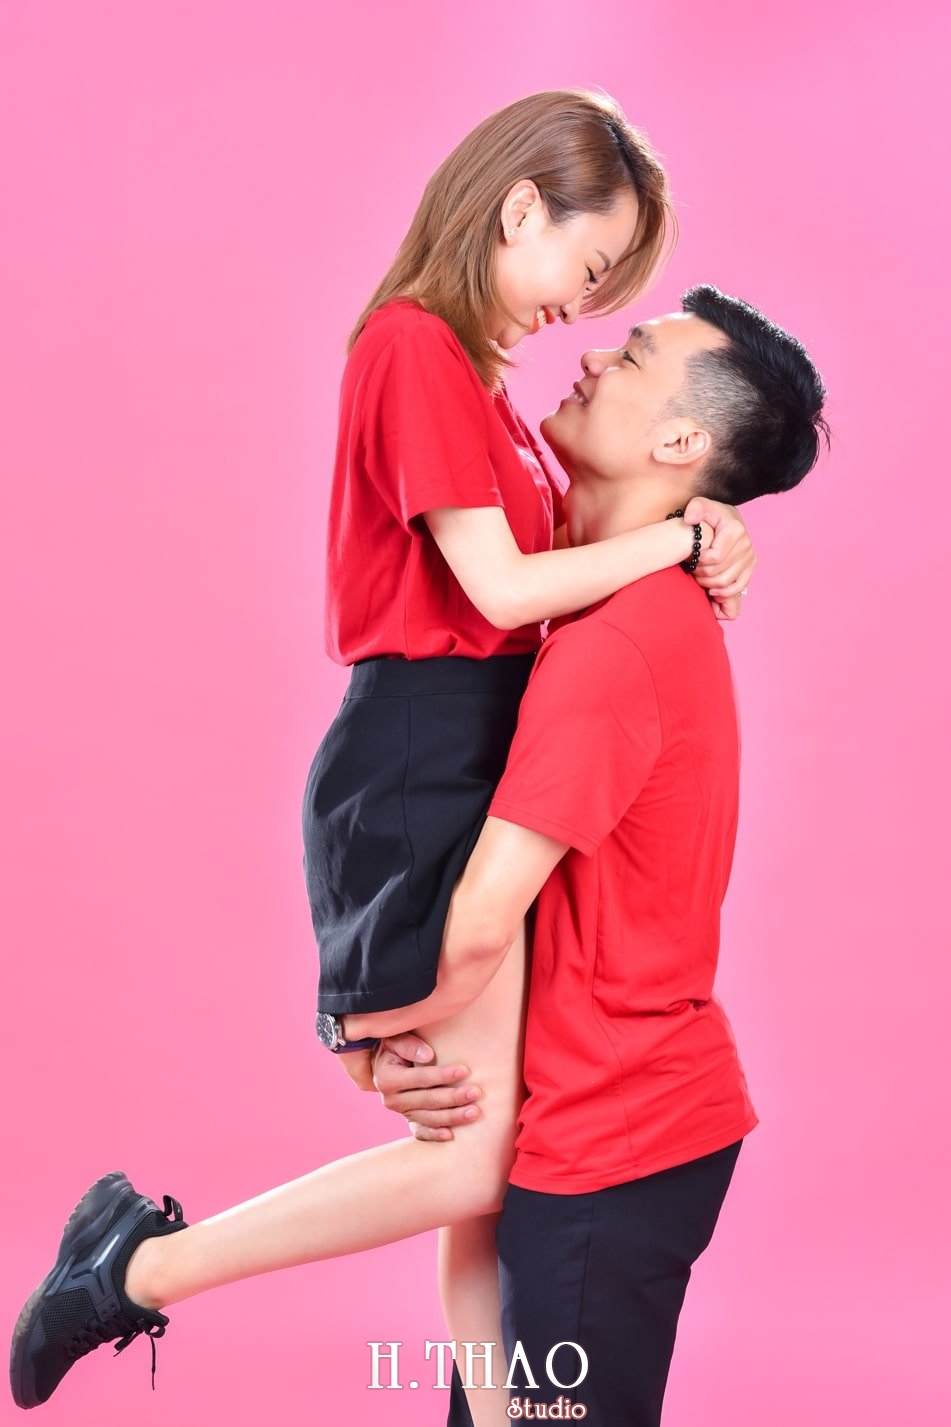 Anh couple 16 min - 3 concept chụp ảnh với người yêu đẹp mà chất - HThao Studio